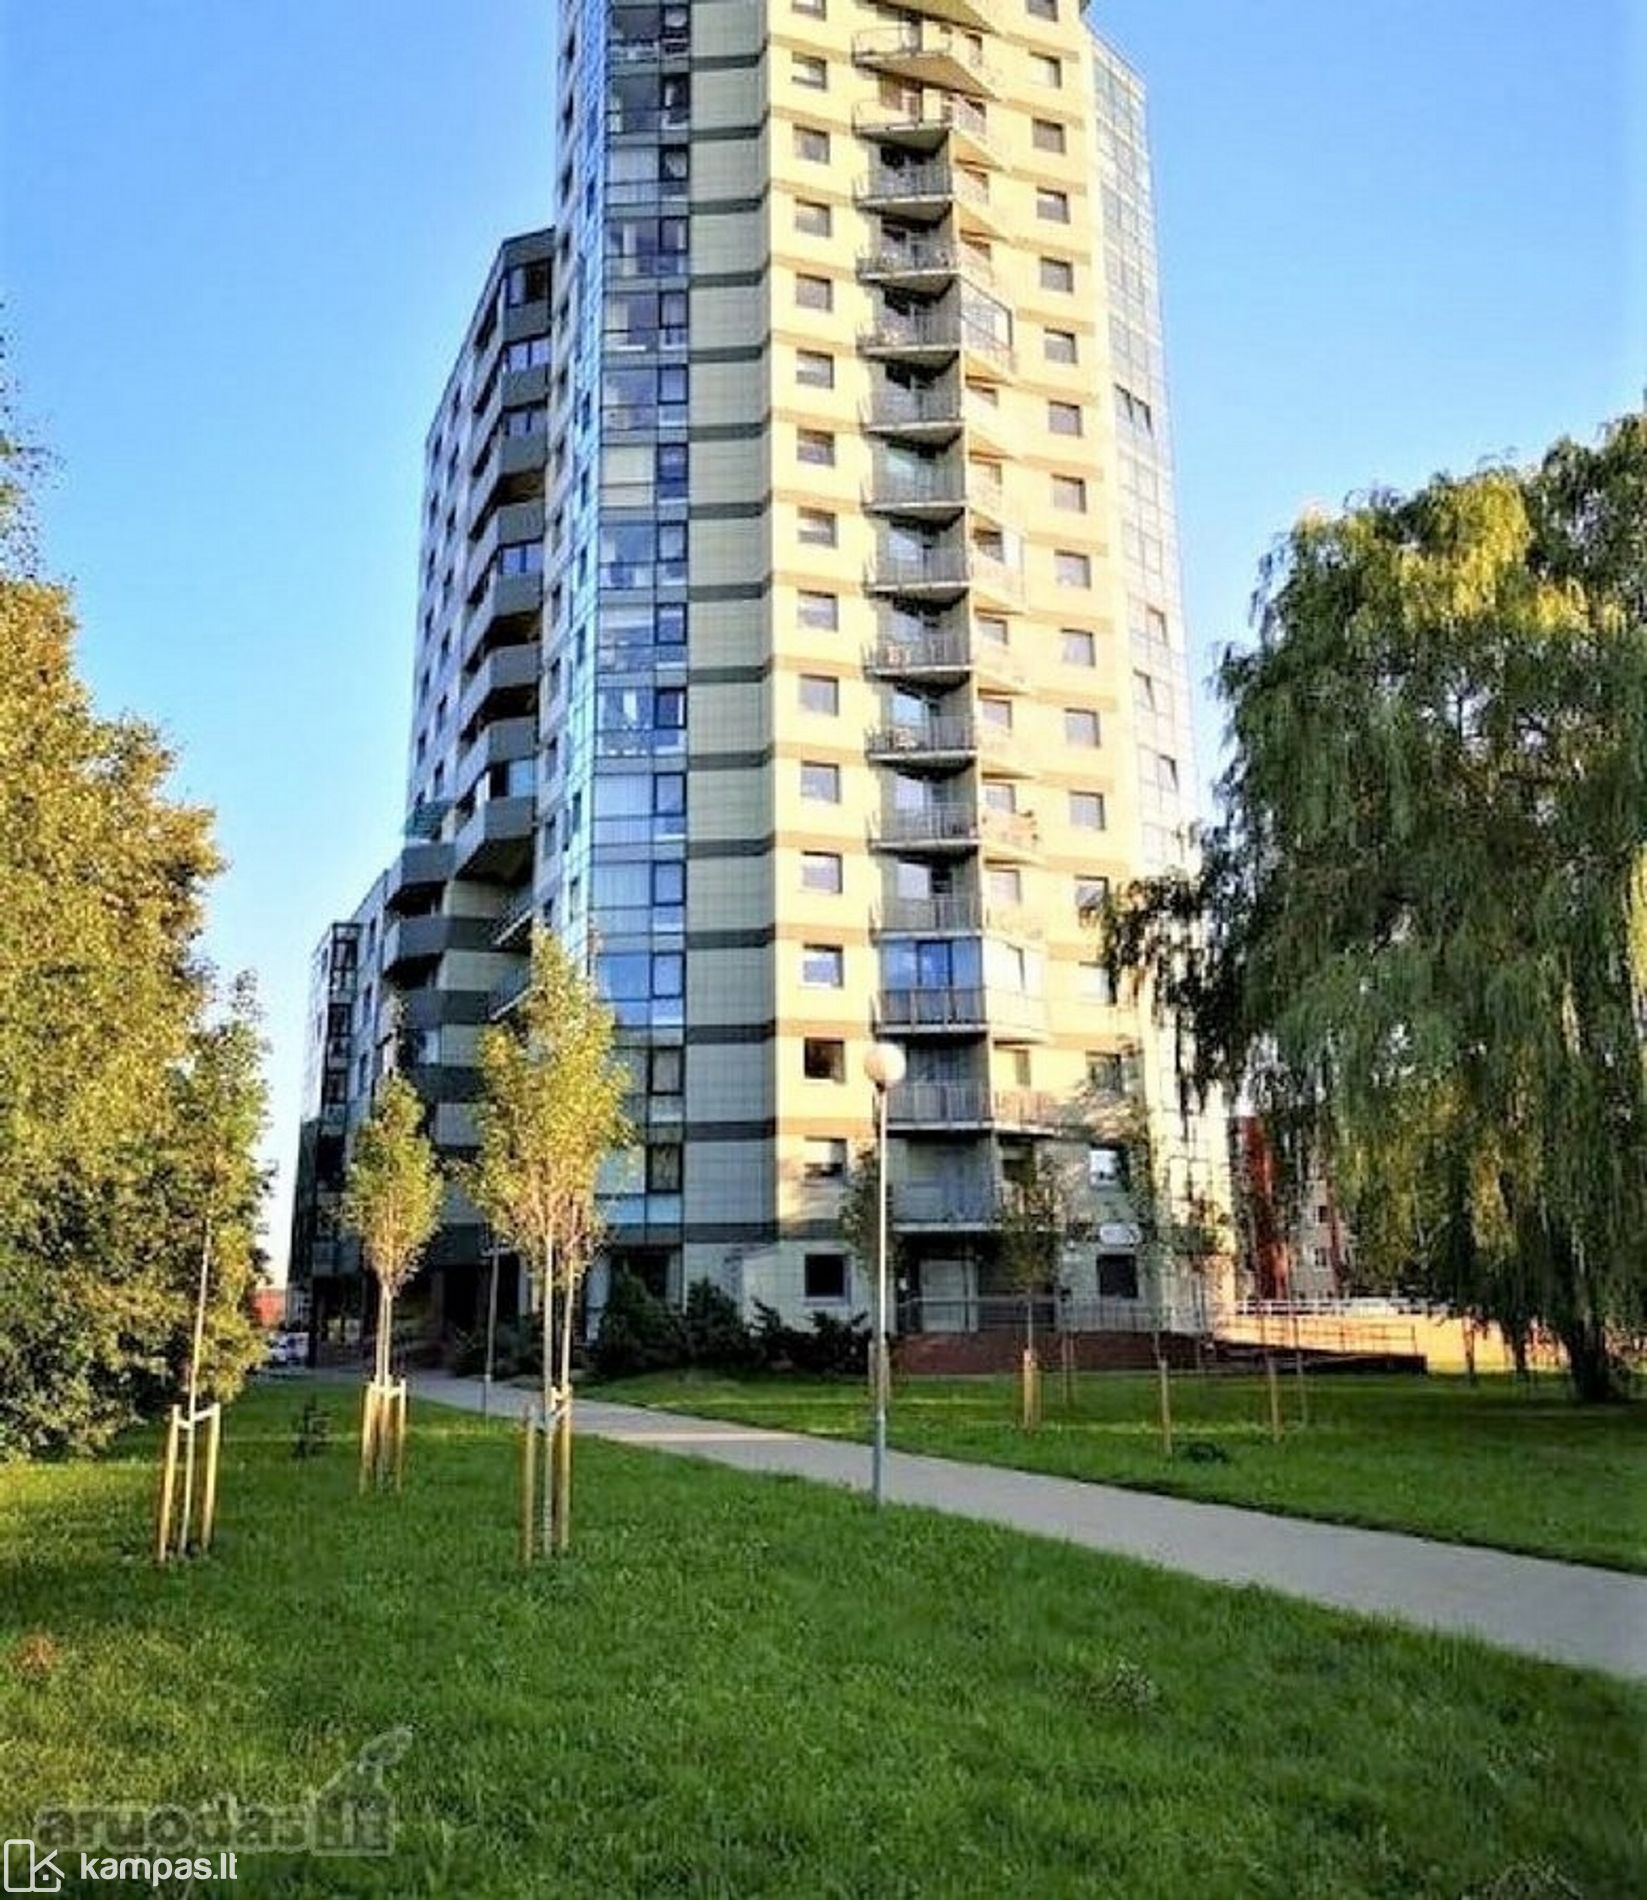 Main Image Klaipėda, Kaunas, Kauno g.